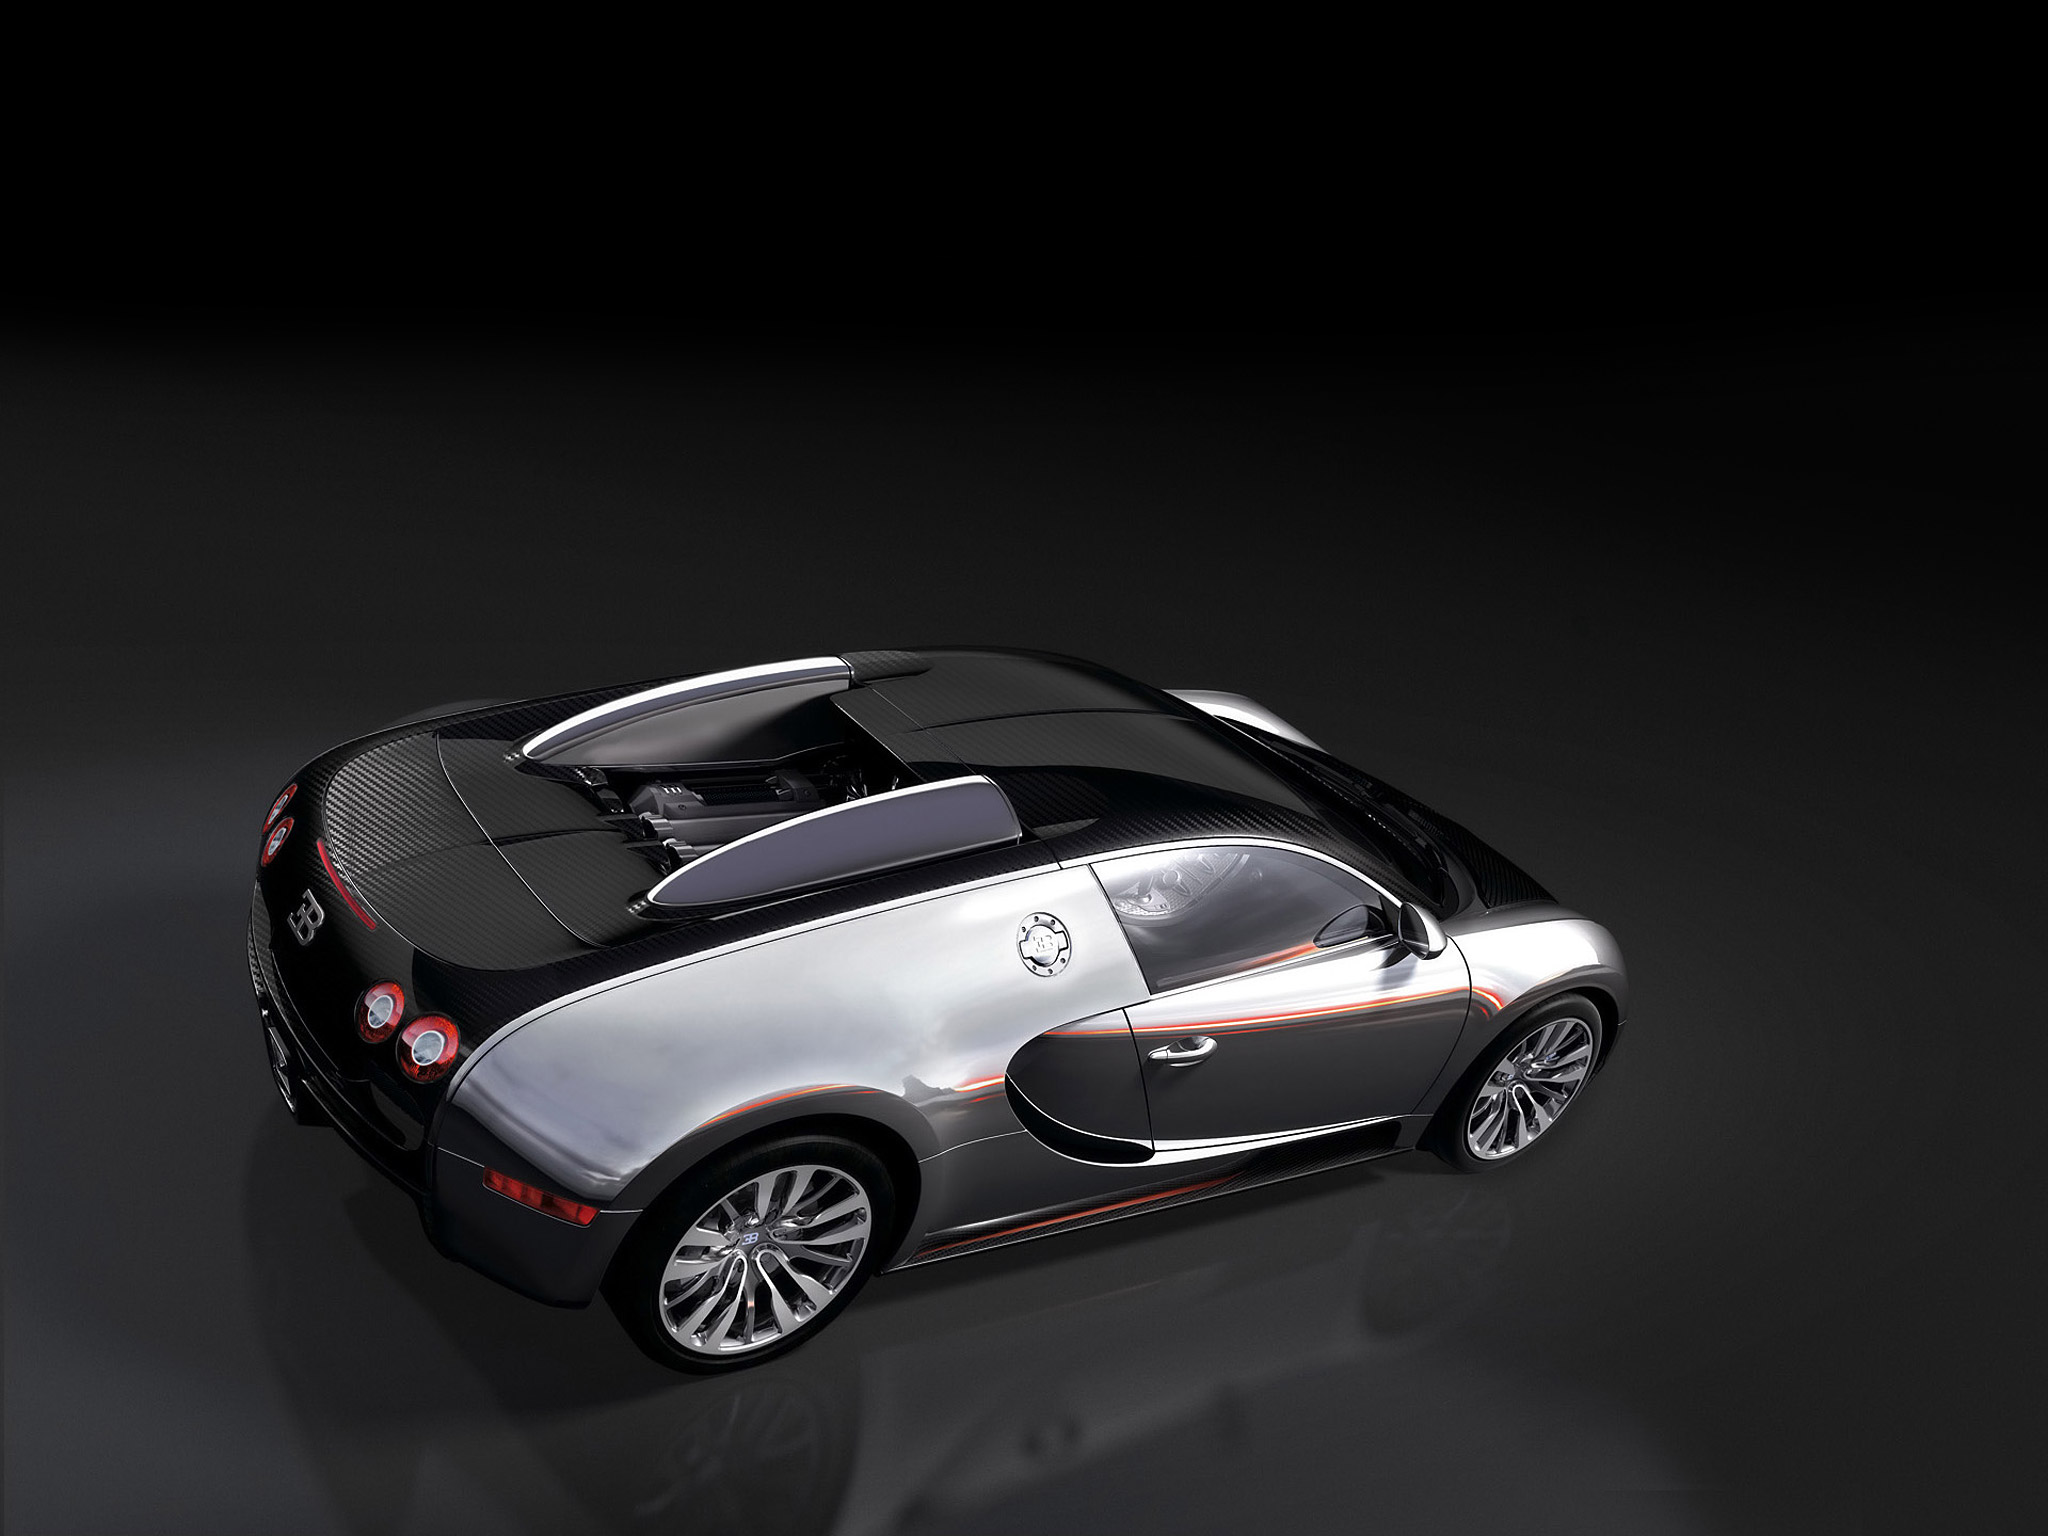  2008 Bugatti Veyron Pur Sang Wallpaper.